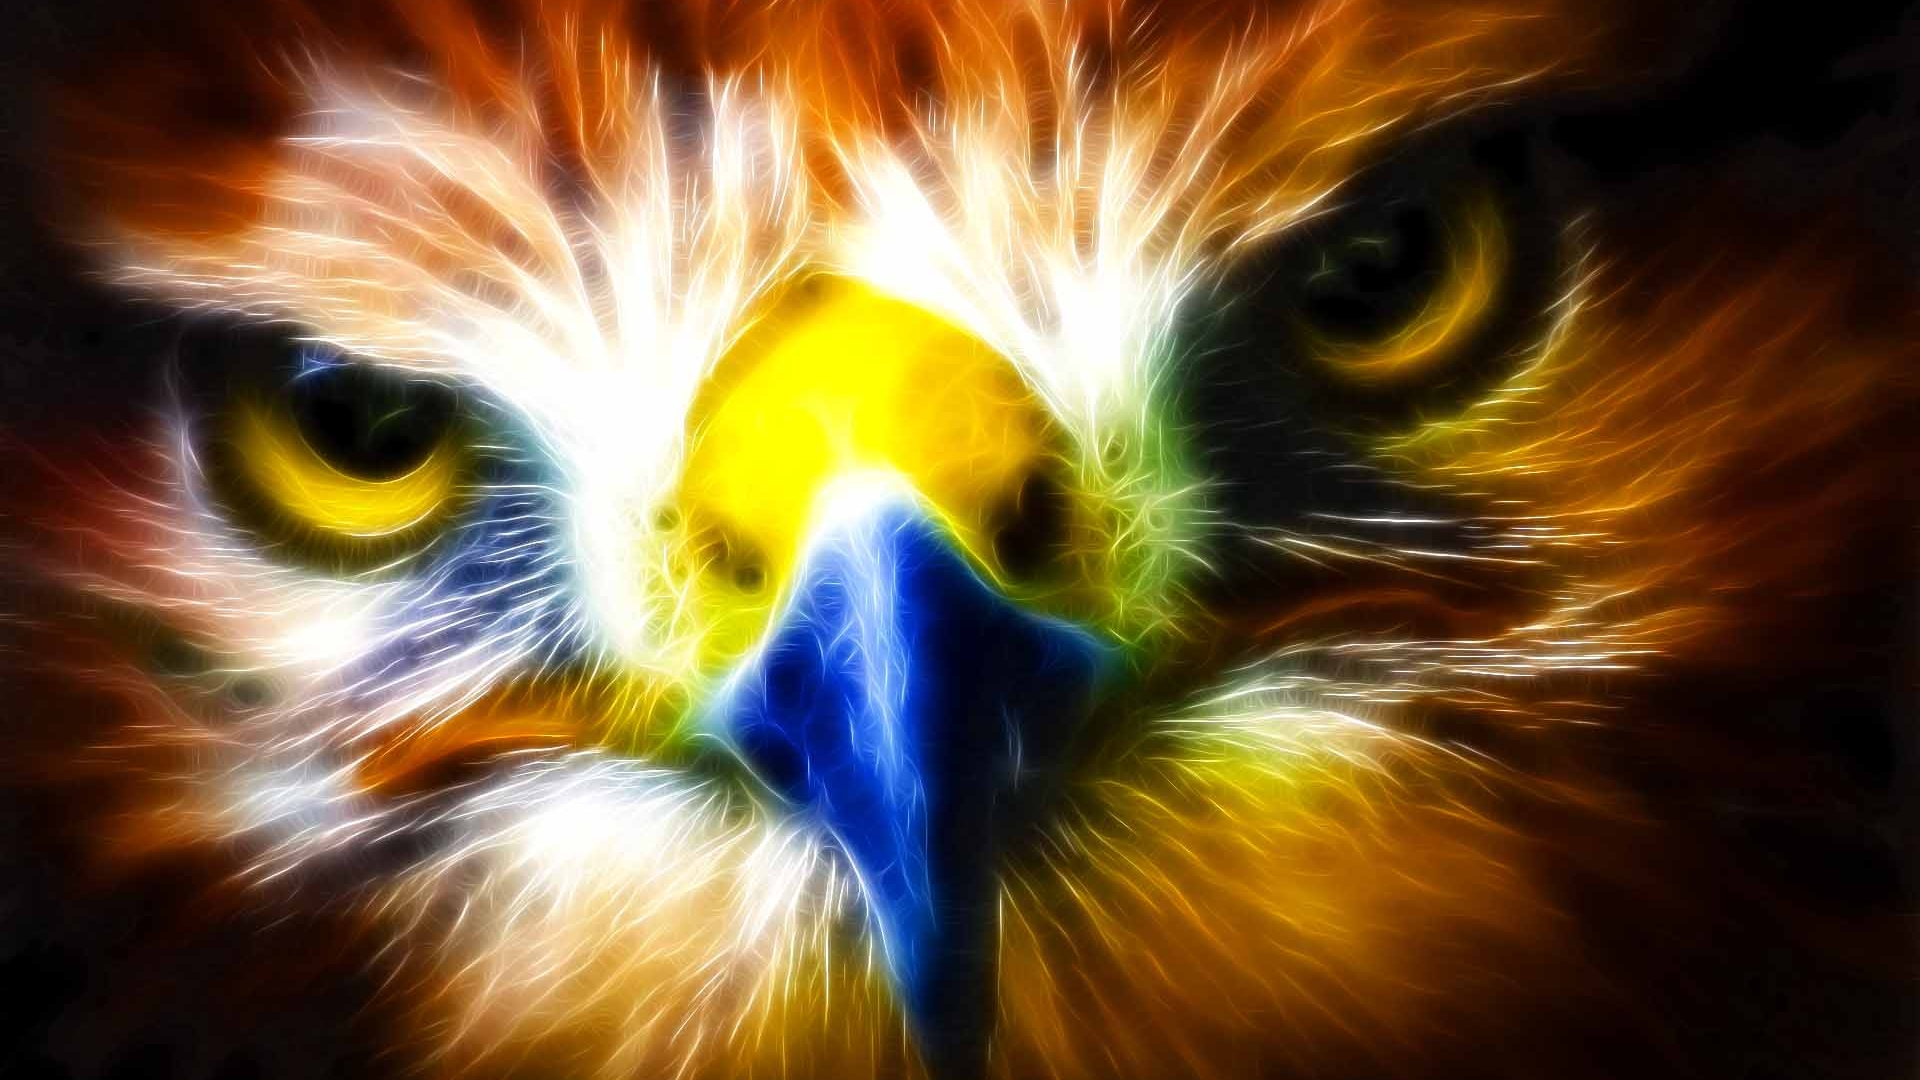 wallpaper maken,bird,eagle,bird of prey,golden eagle,close up